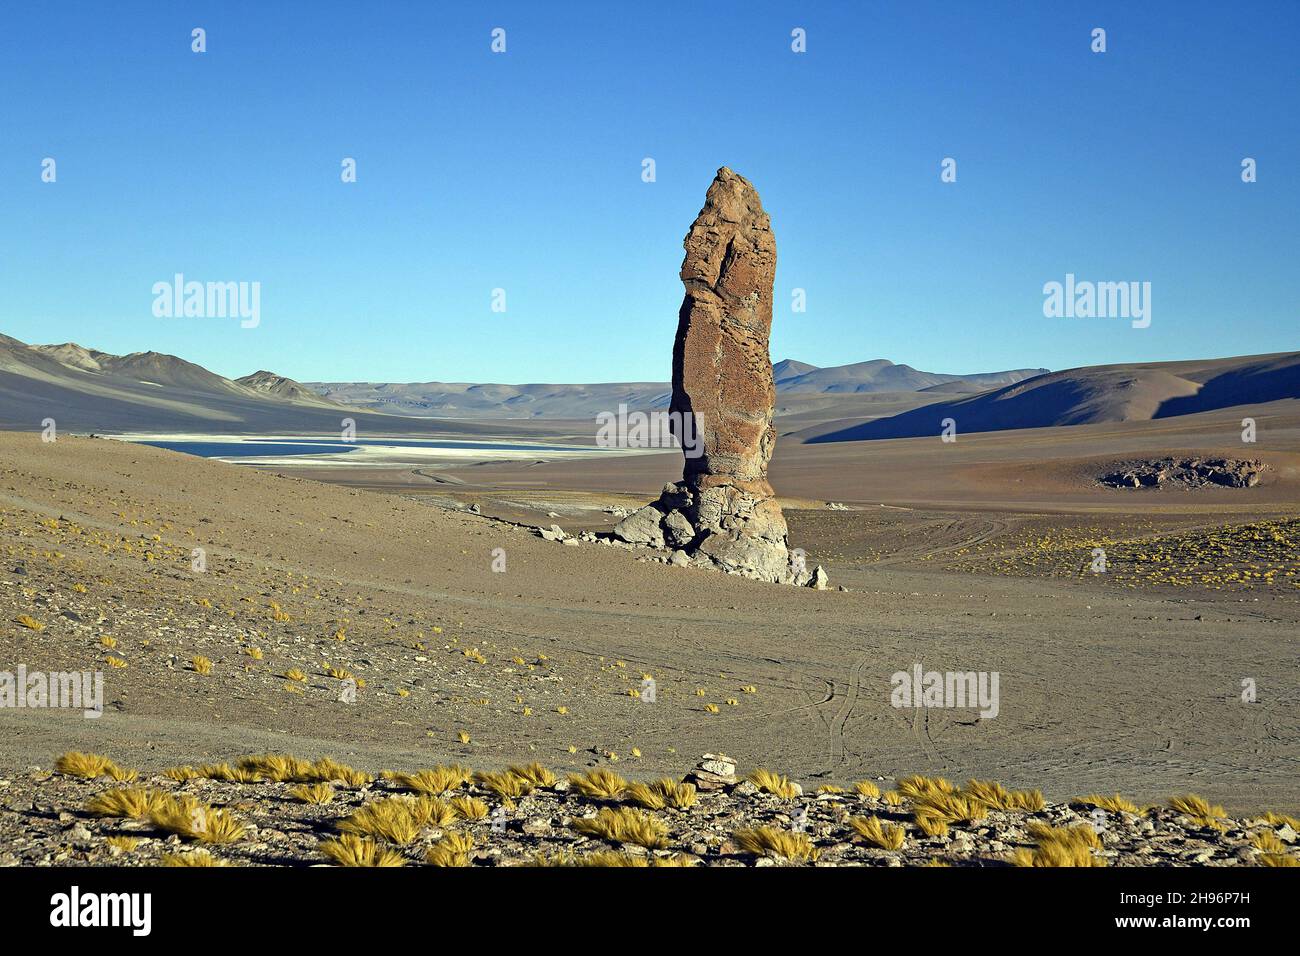 Monolithe géologique, connu sous le nom de Monjes de la Pakana dans le désert d'Atacama, au Chili Banque D'Images